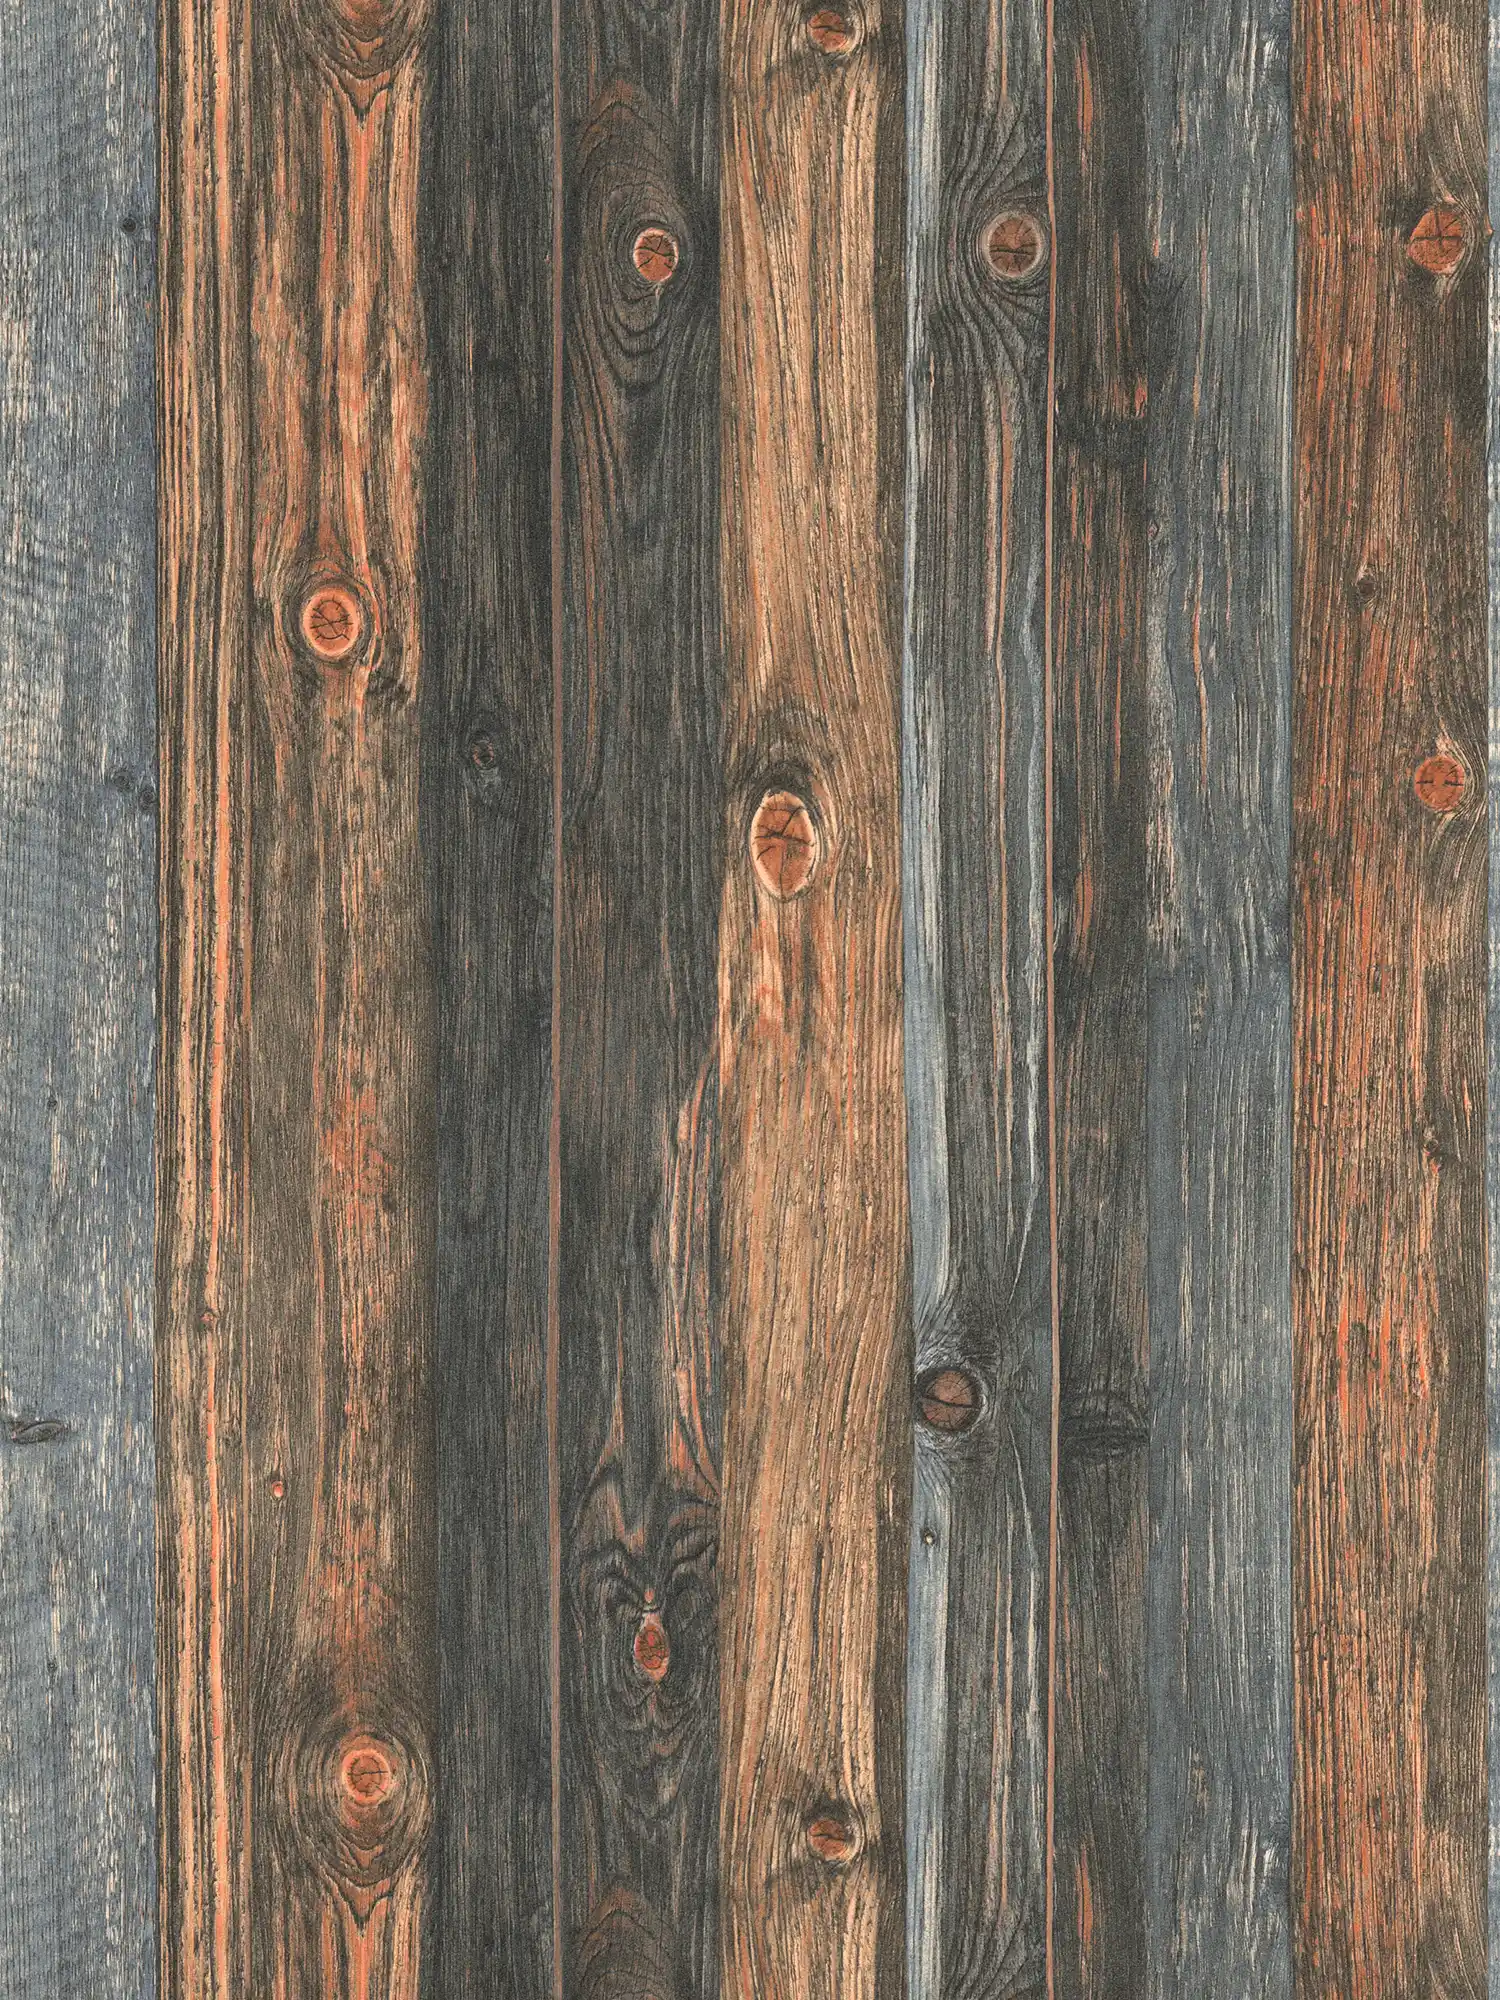 Houten behang met plankenmotief, houtstructuur en -nerf - bruin, grijs, beige
